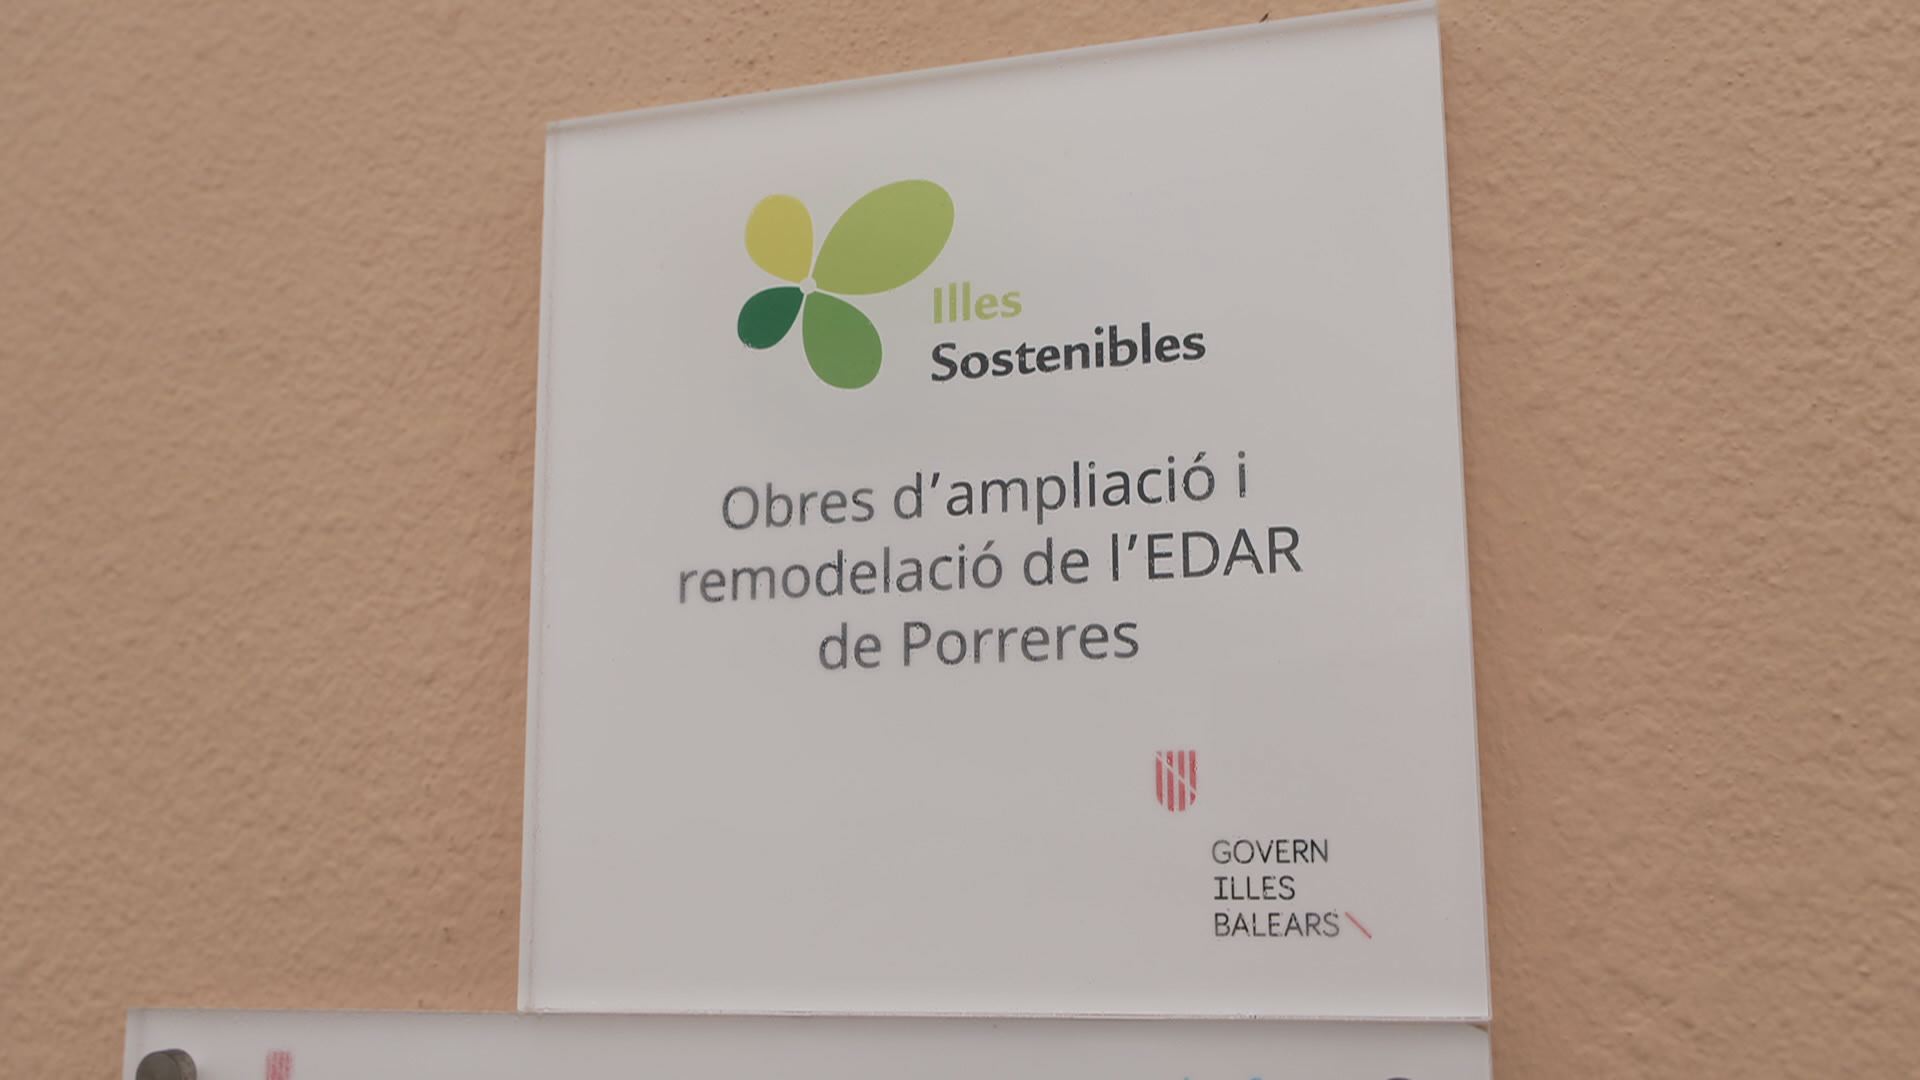 스페인 마요르카 포레라스 하수처리장에는 환경세를 통해 시설이 개선됐다는 안내문이 붙어있다.